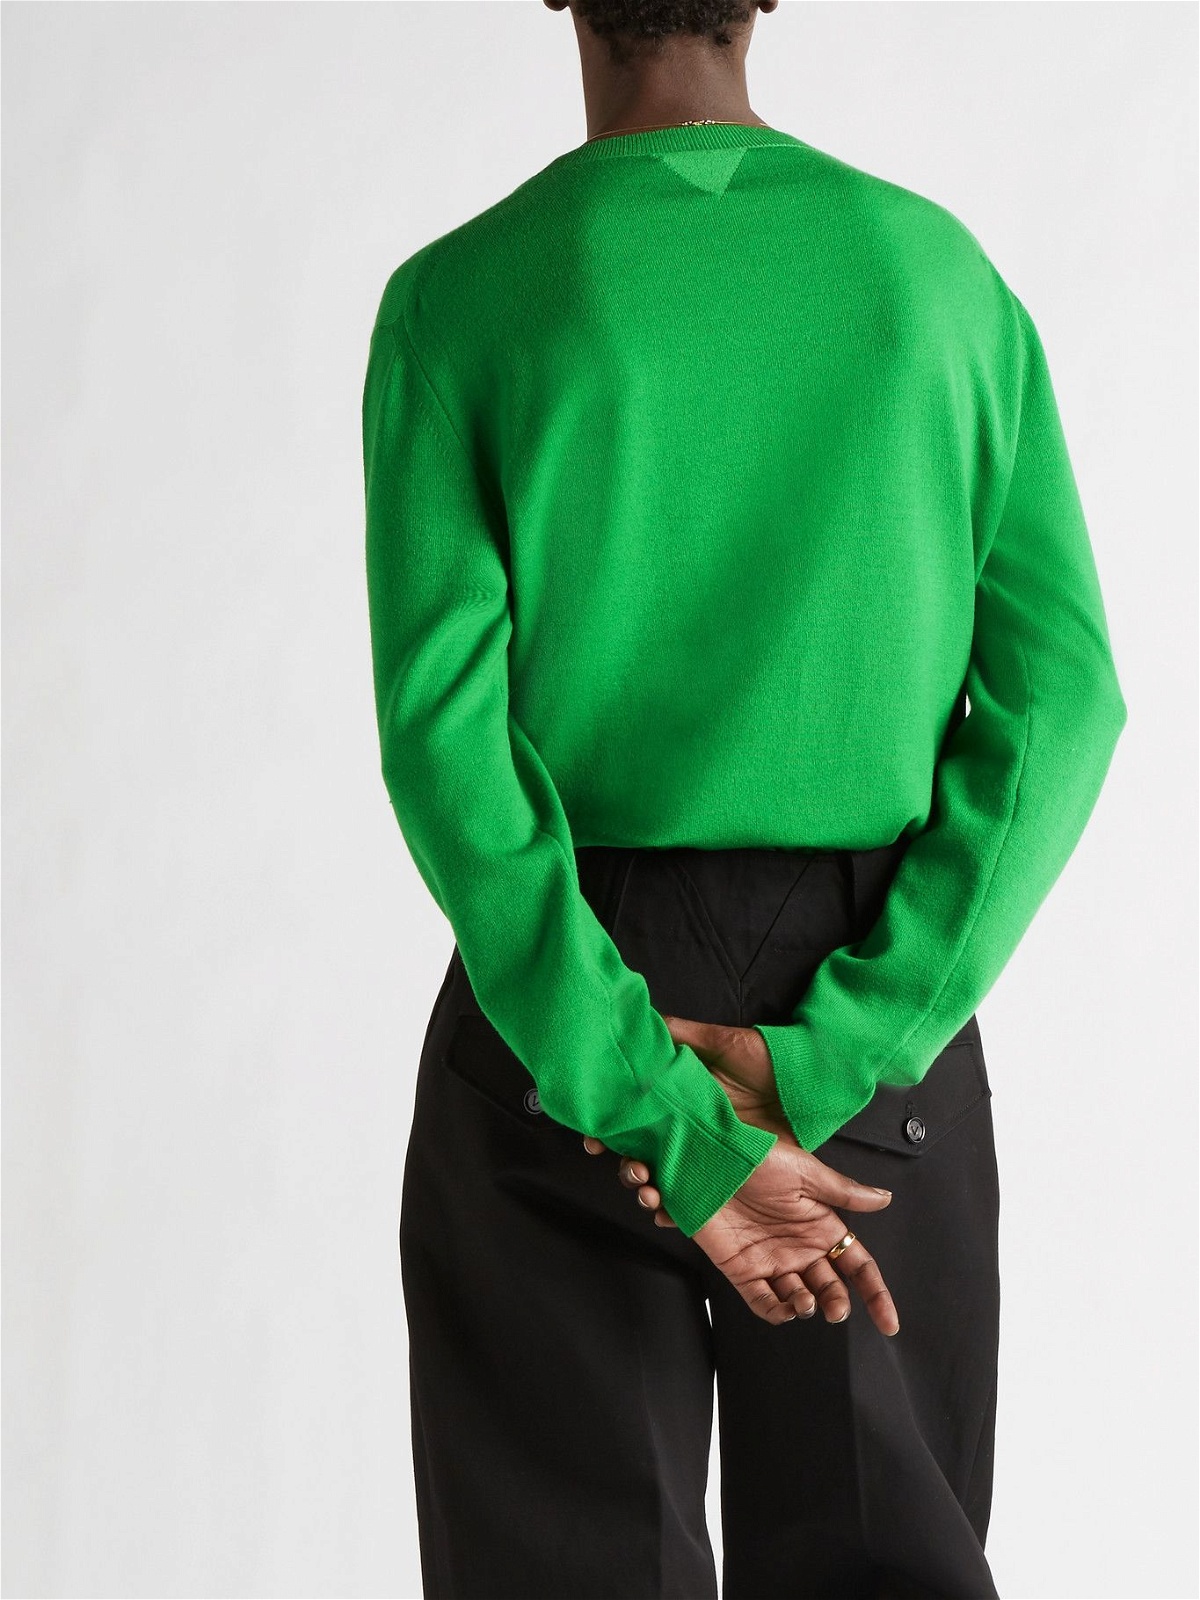 BOTTEGA VENETA - Cashmere-Blend Sweater - Green